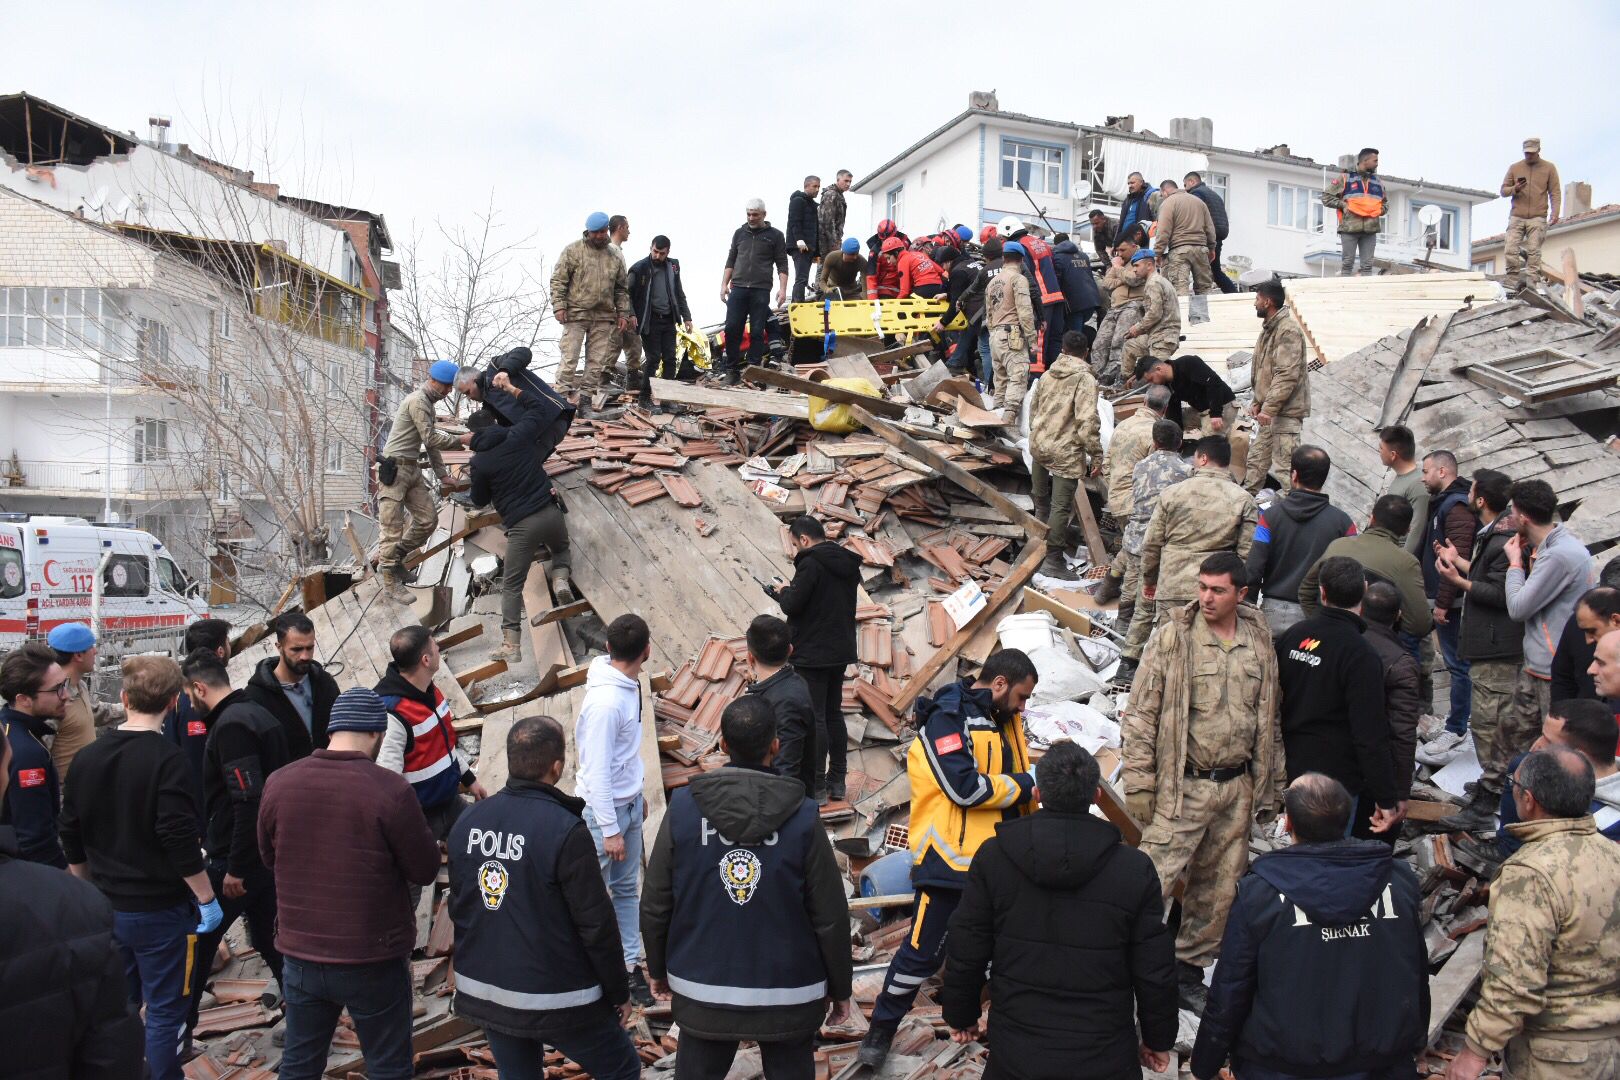 Gempa berkekuatan 5,6 melanda Turki dalam gempa susulan besar terbaru |  Berita gempa Turki dan Suriah